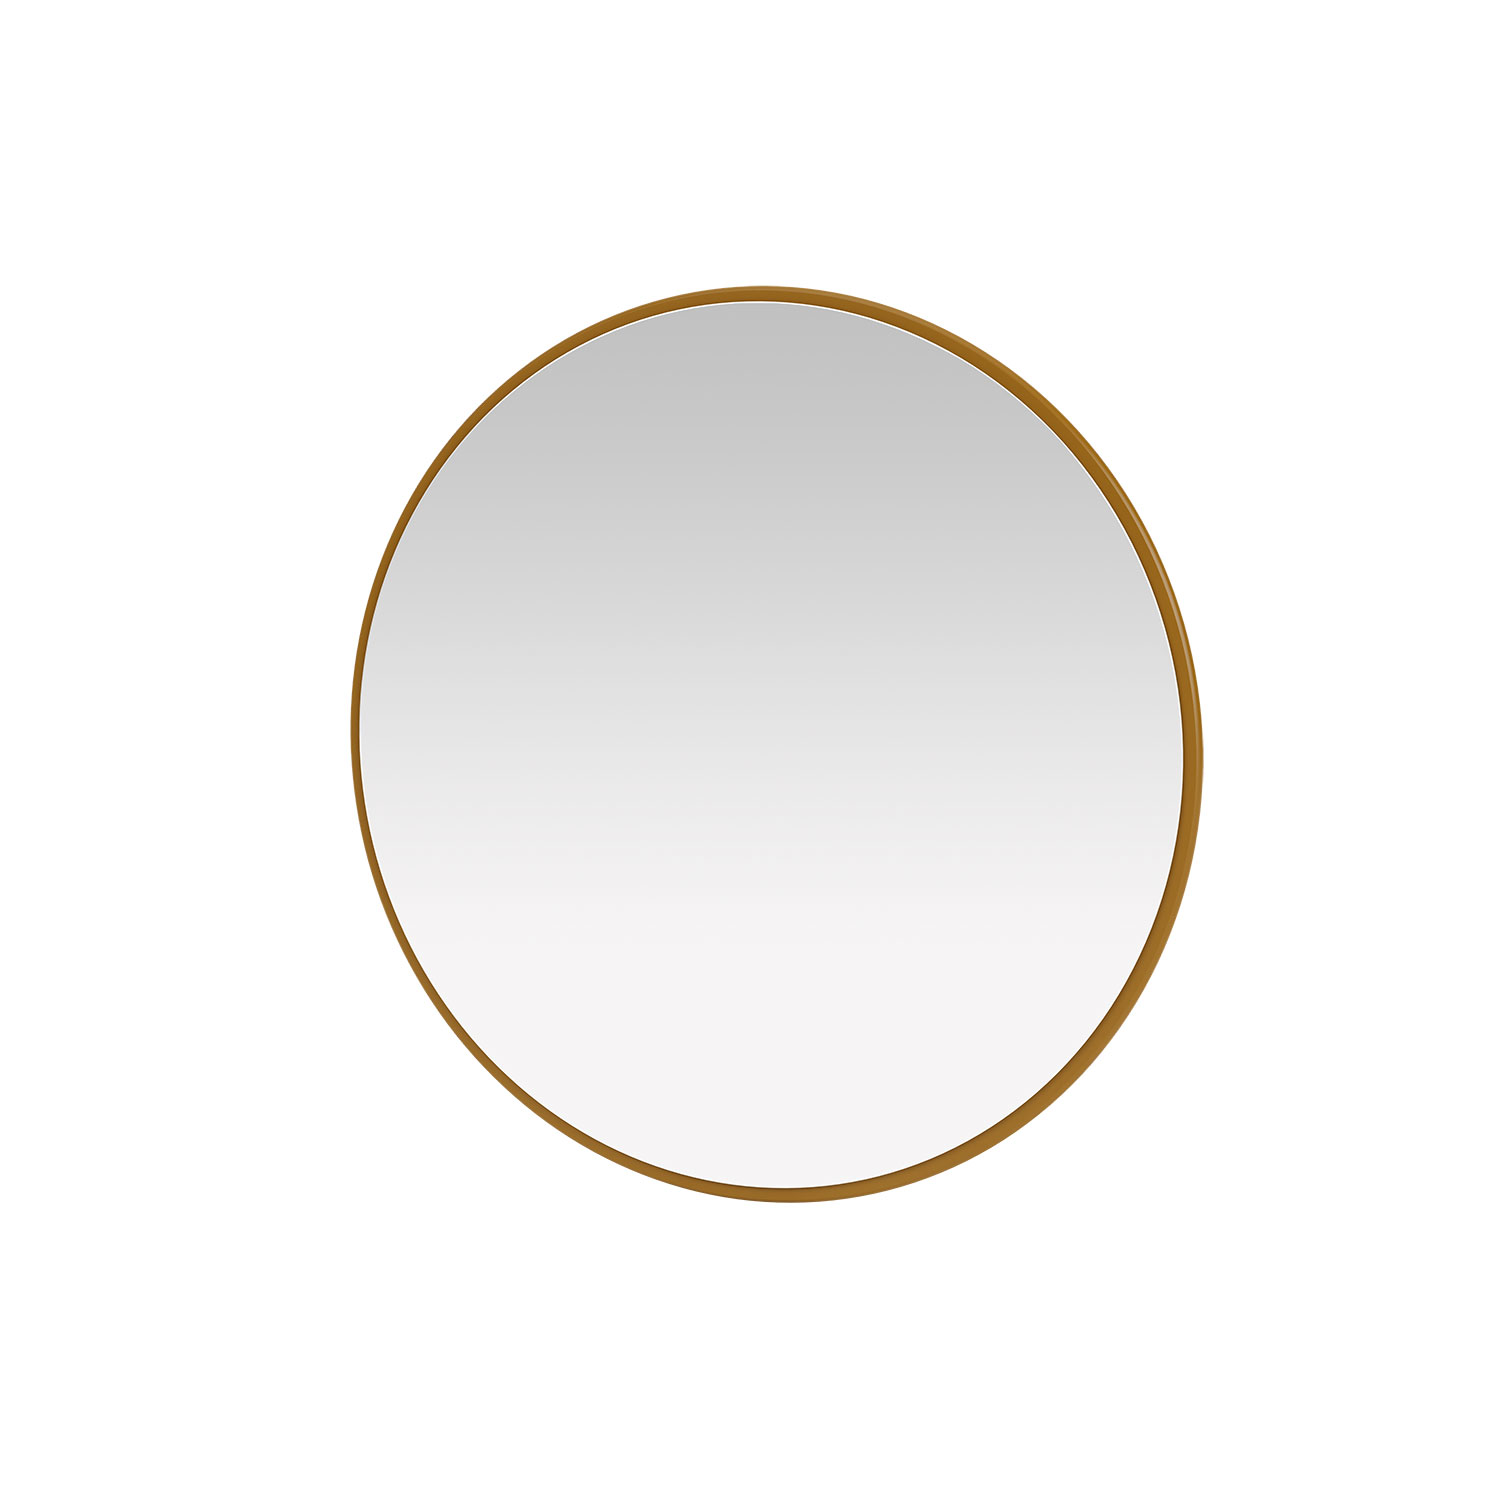 AROUND mirror, 14 colors